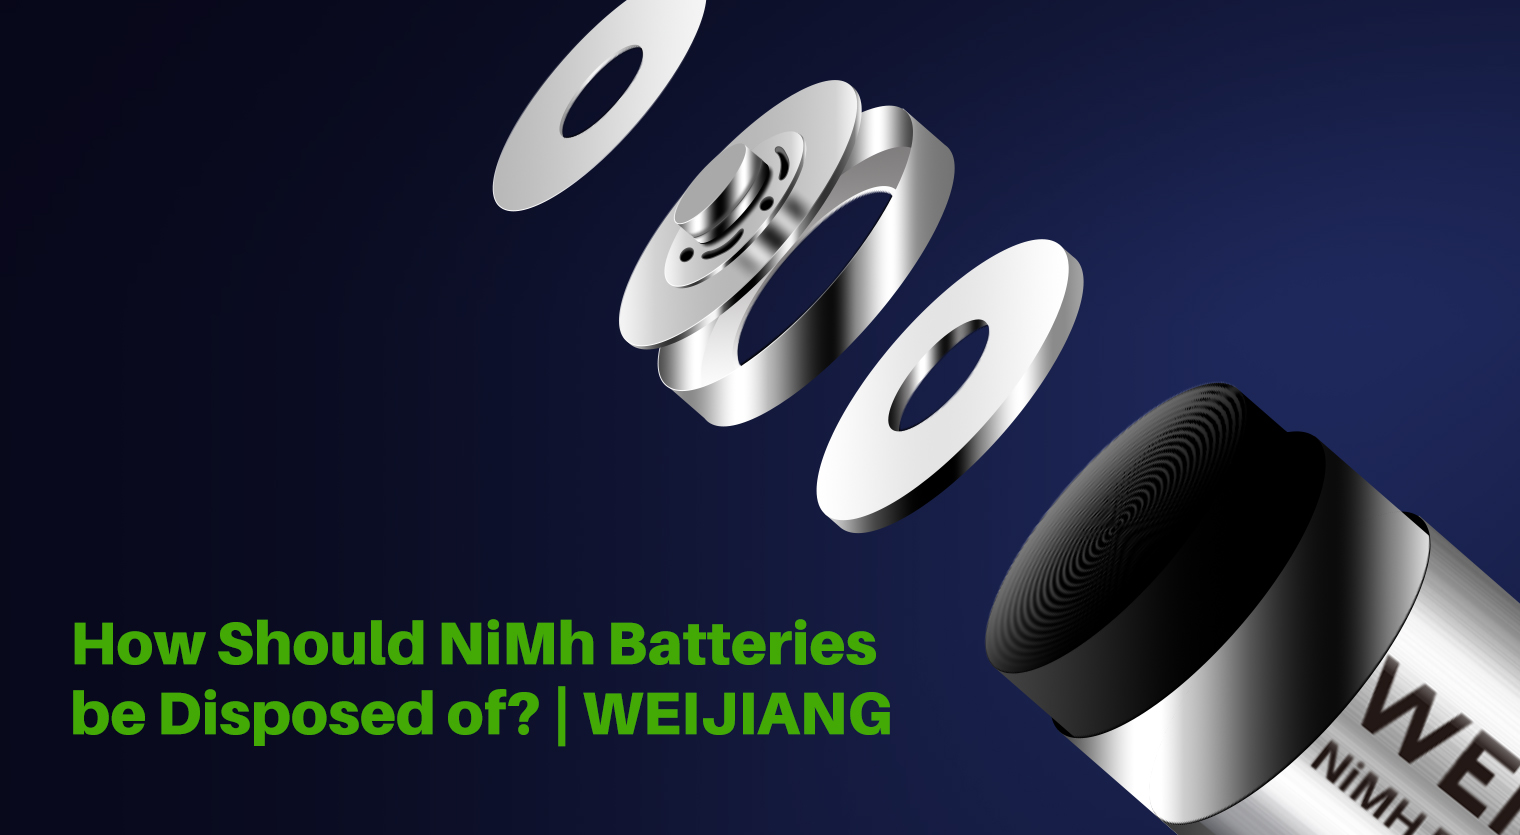 Come dovrebbero essere smaltite le batterie NiMh?